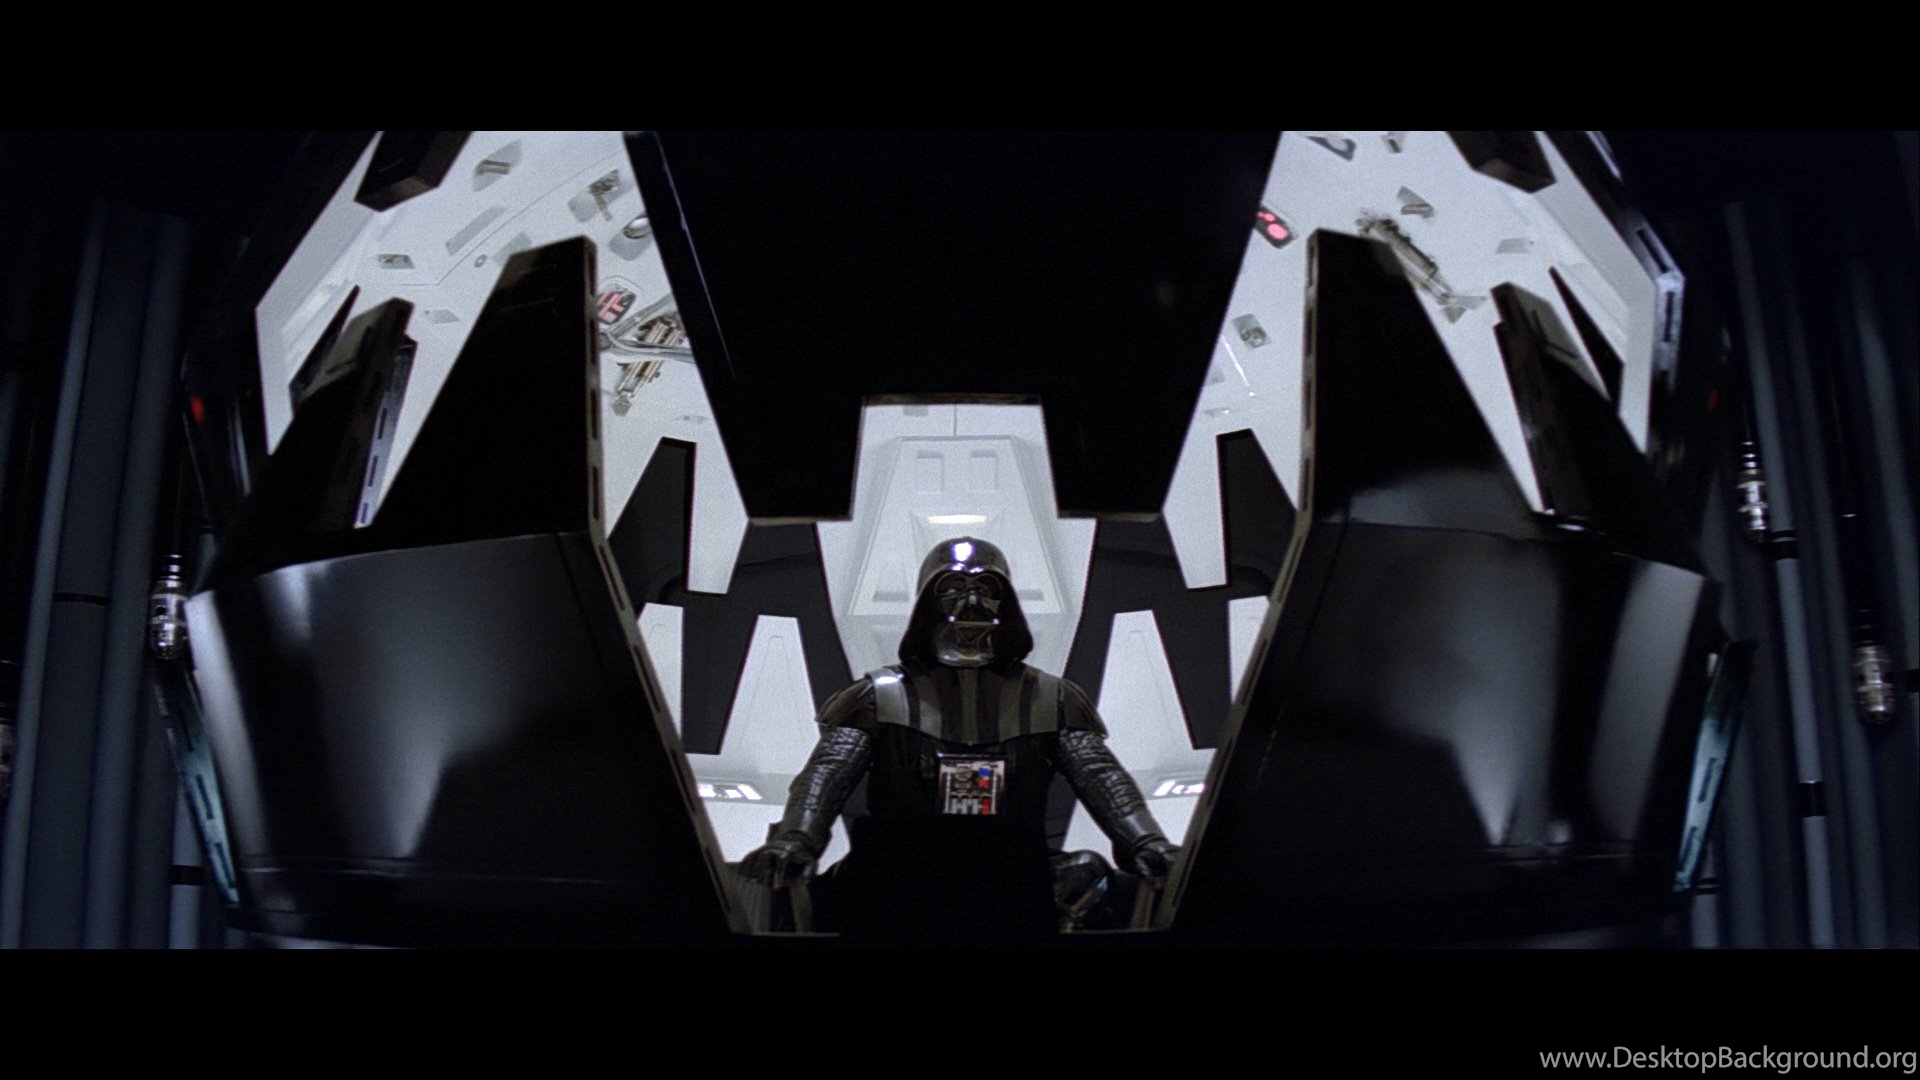 Star Wars Episode V: The Empire Strikes Back Computer Wallpaper. Desktop Background